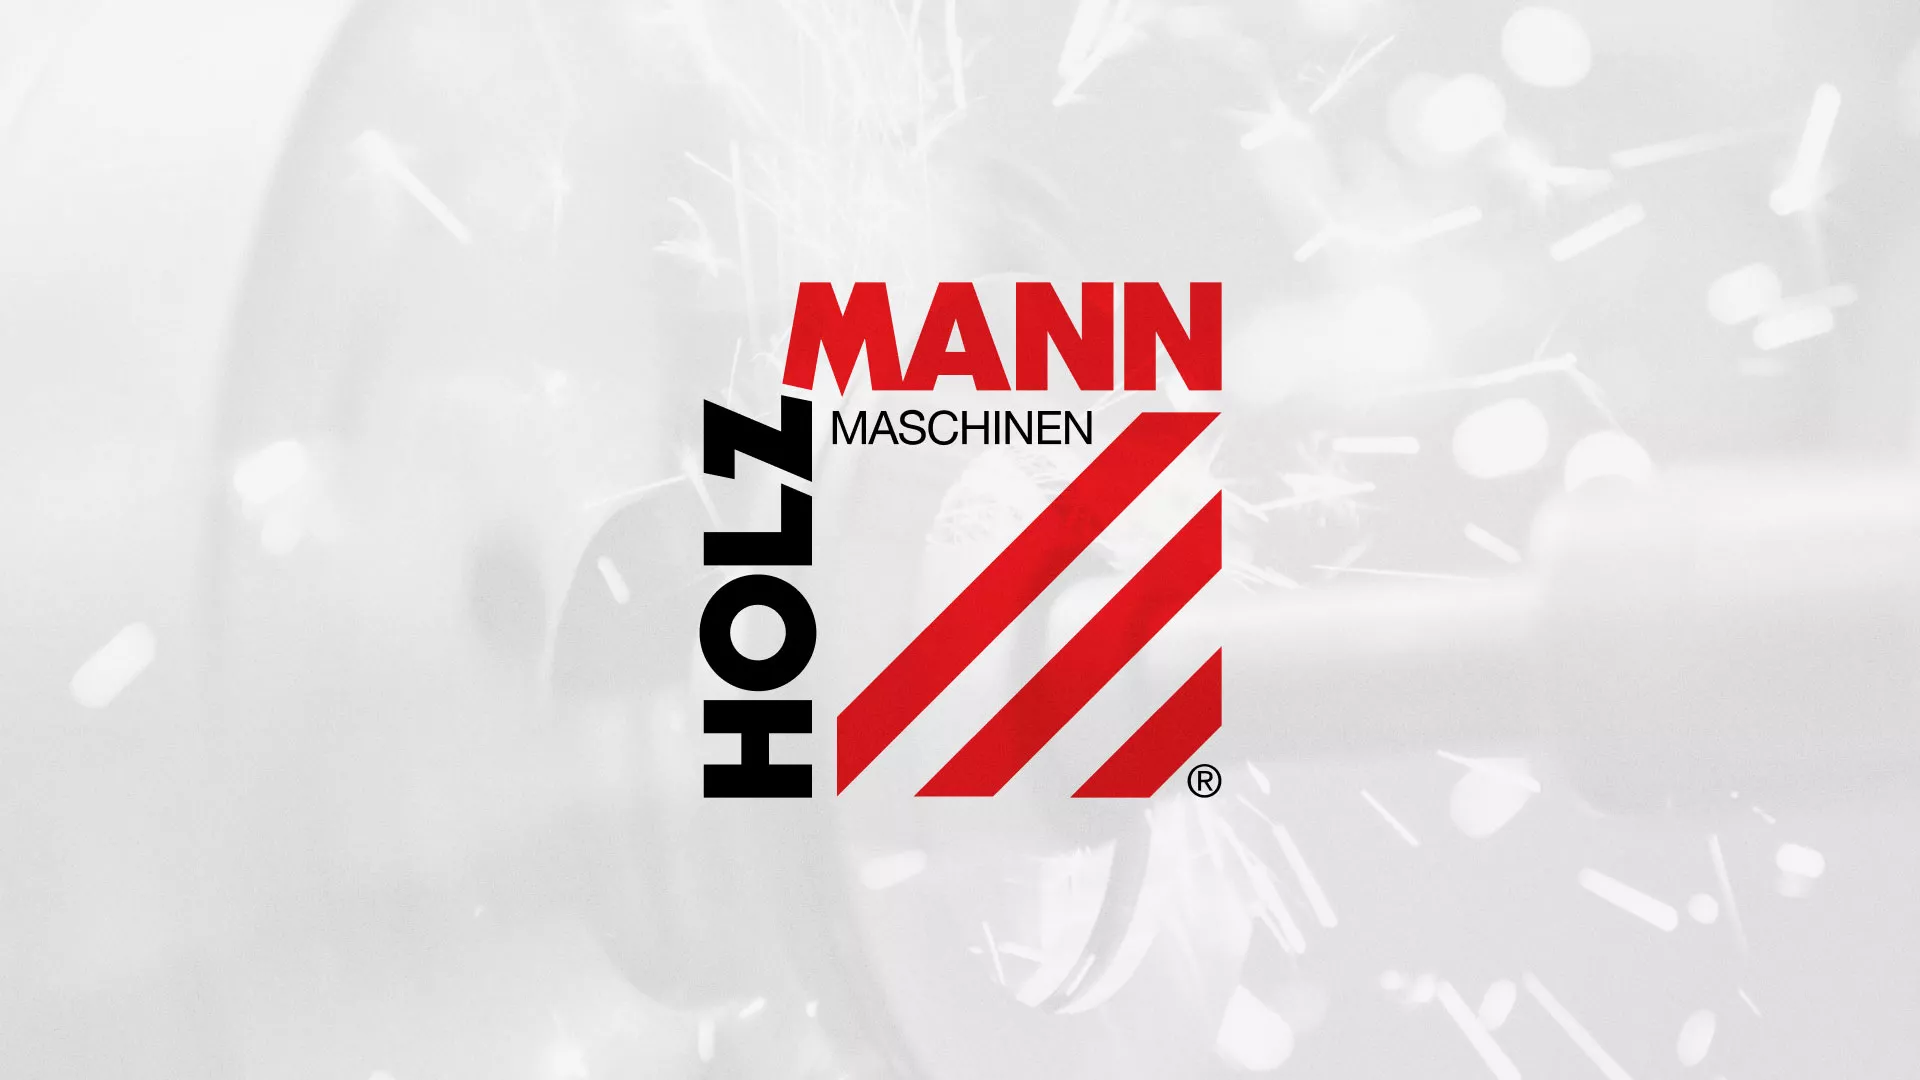 Создание сайта компании «HOLZMANN Maschinen GmbH» в Архангельске